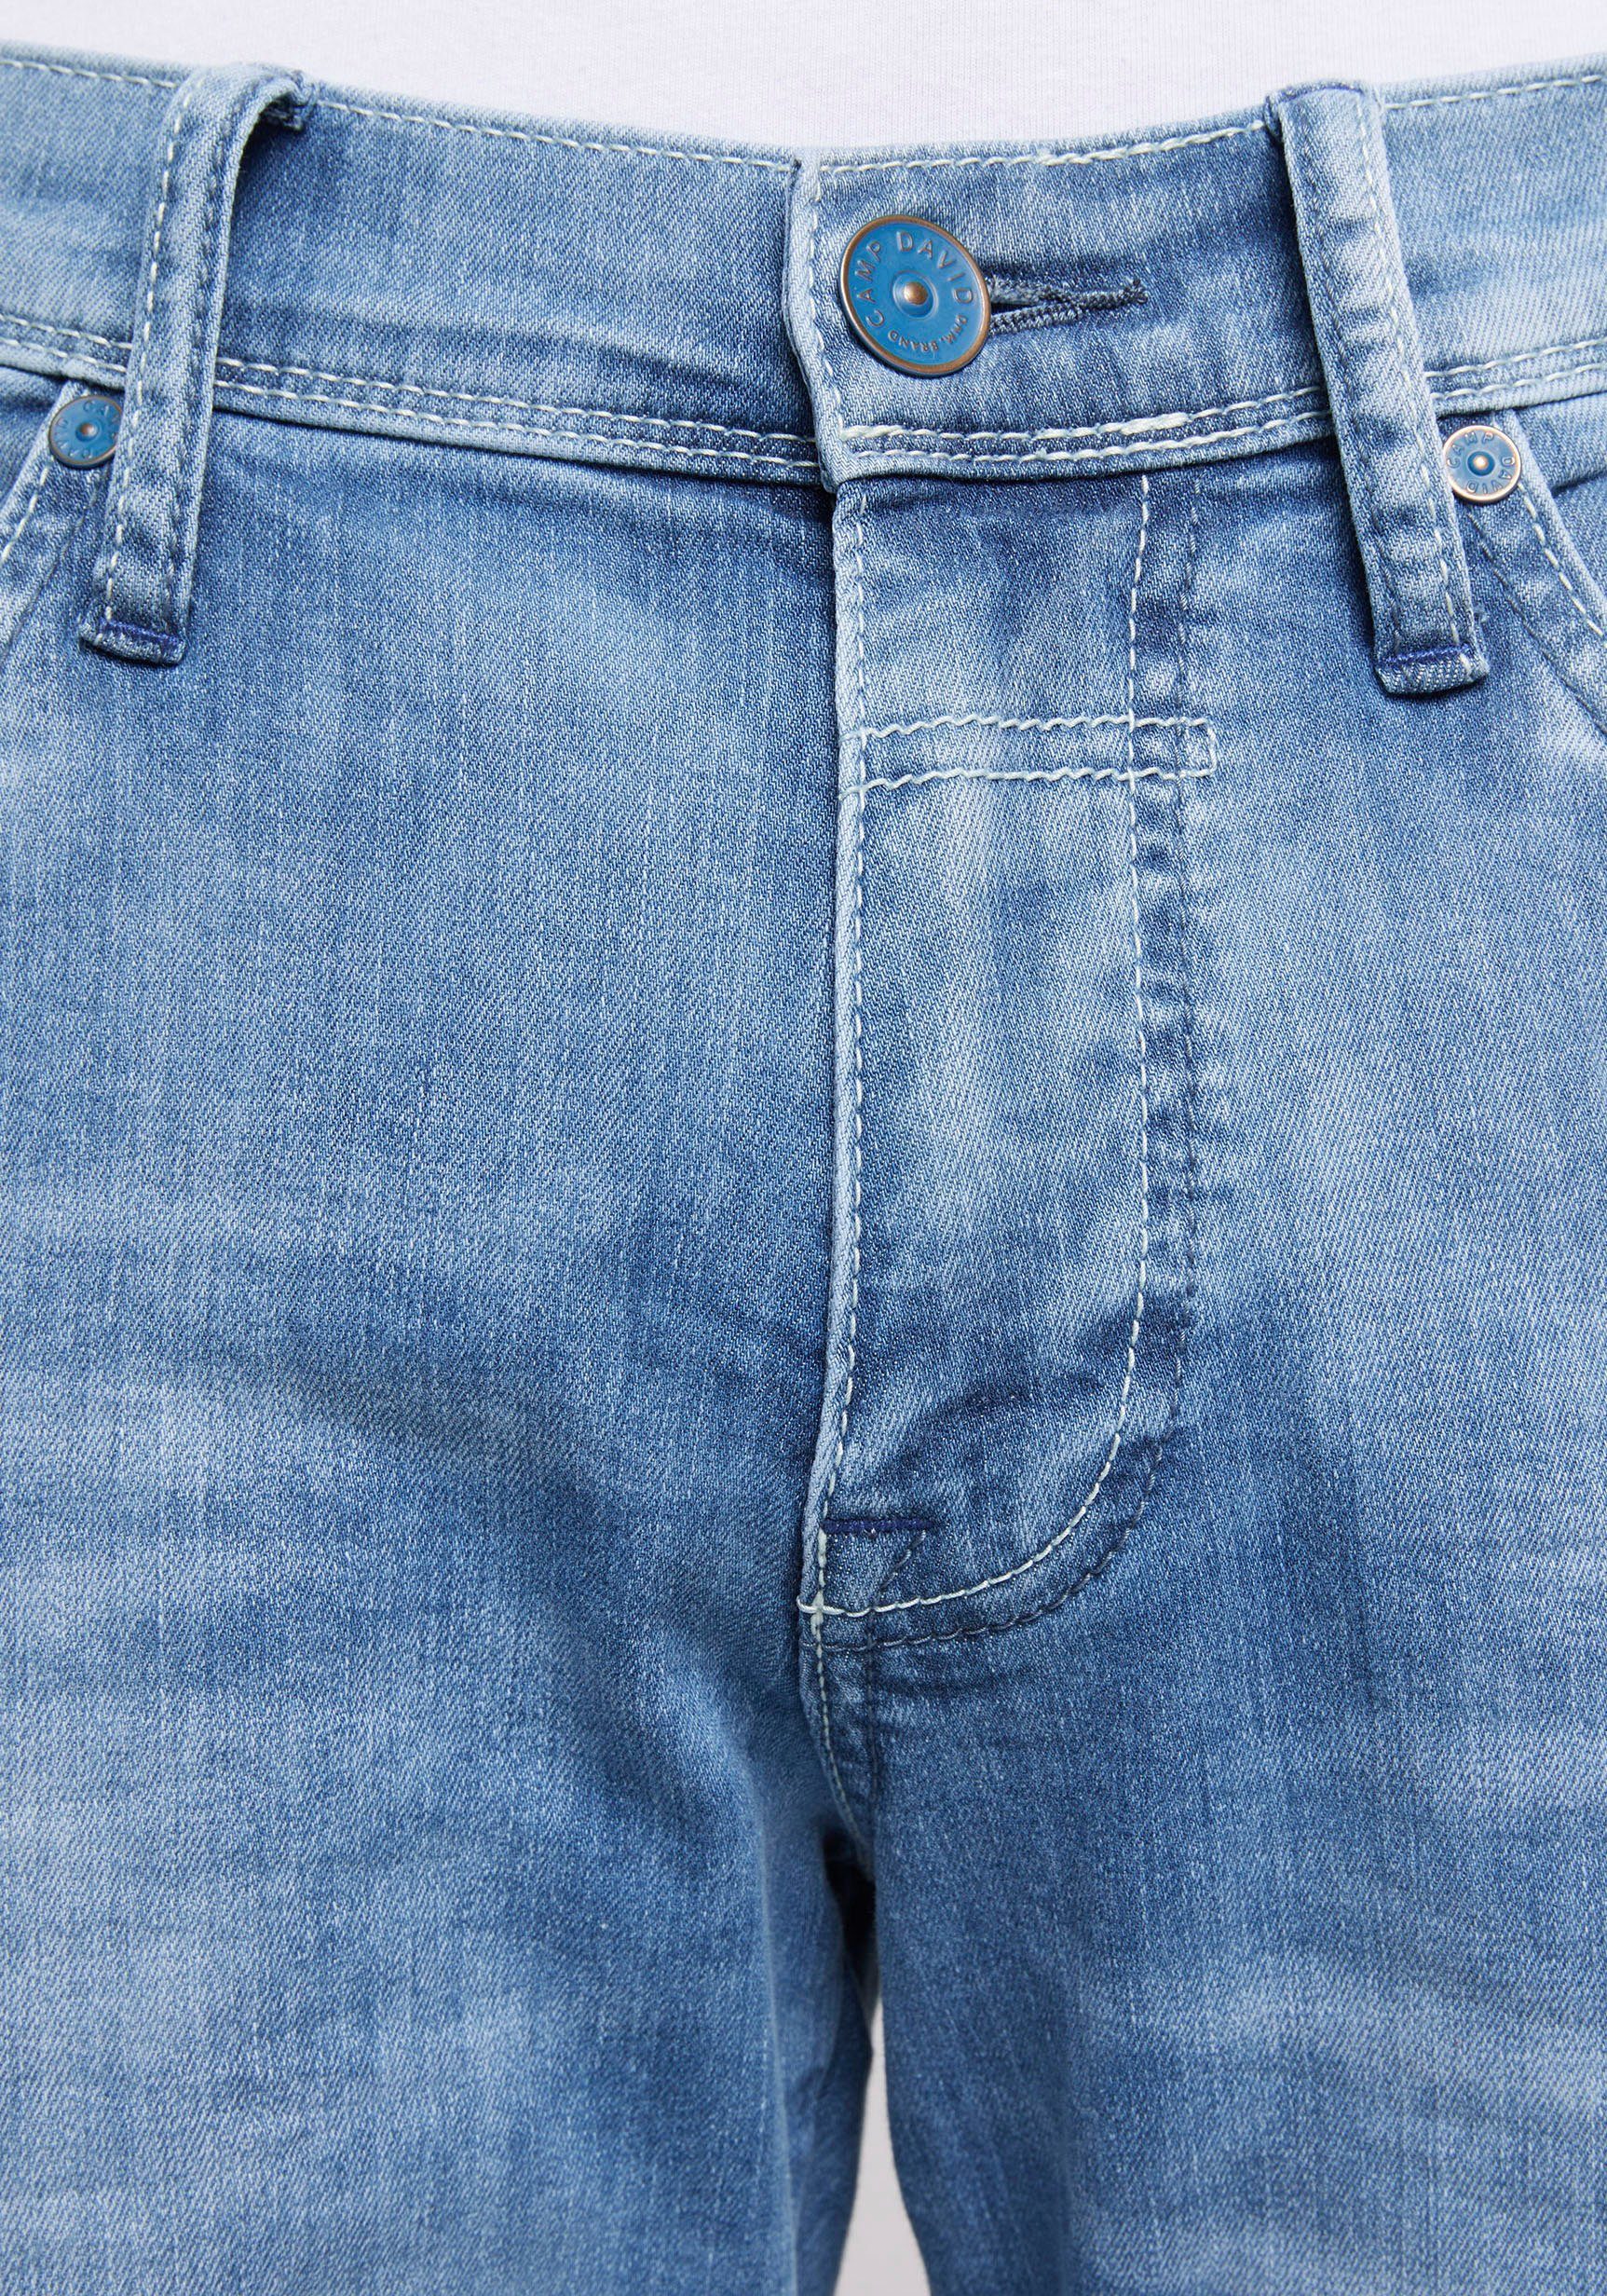 wash DAVID mit Nähten dünnen CAMP 5-Pocket-Jeans blue